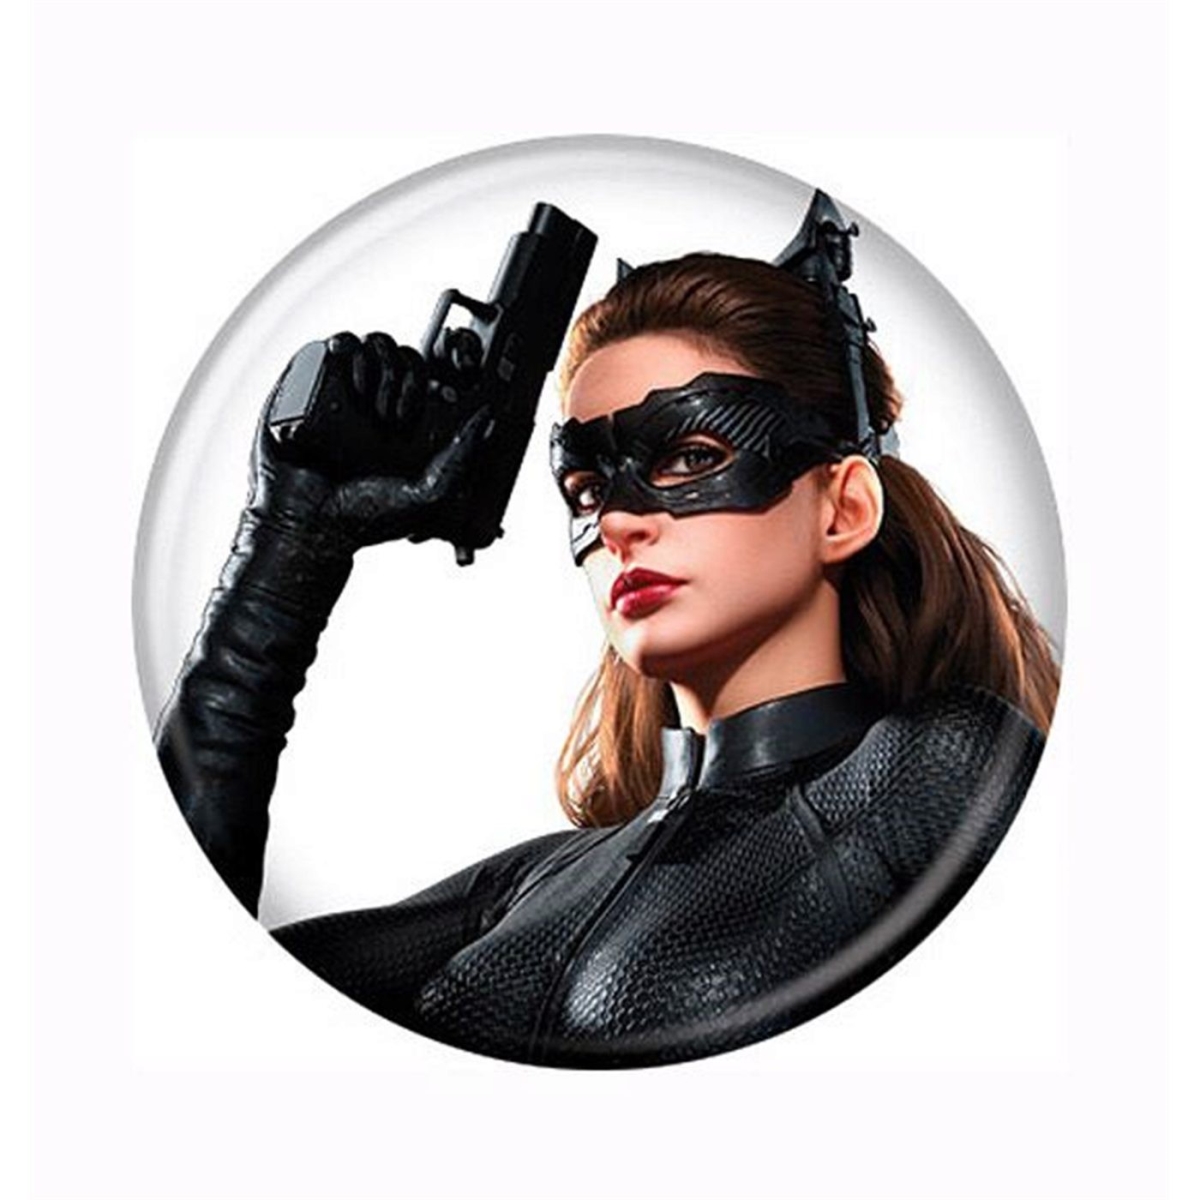 Picture of Catwoman buttnbatdkrctwmgun Catwoman Dark Knight Rises Gun Up Button